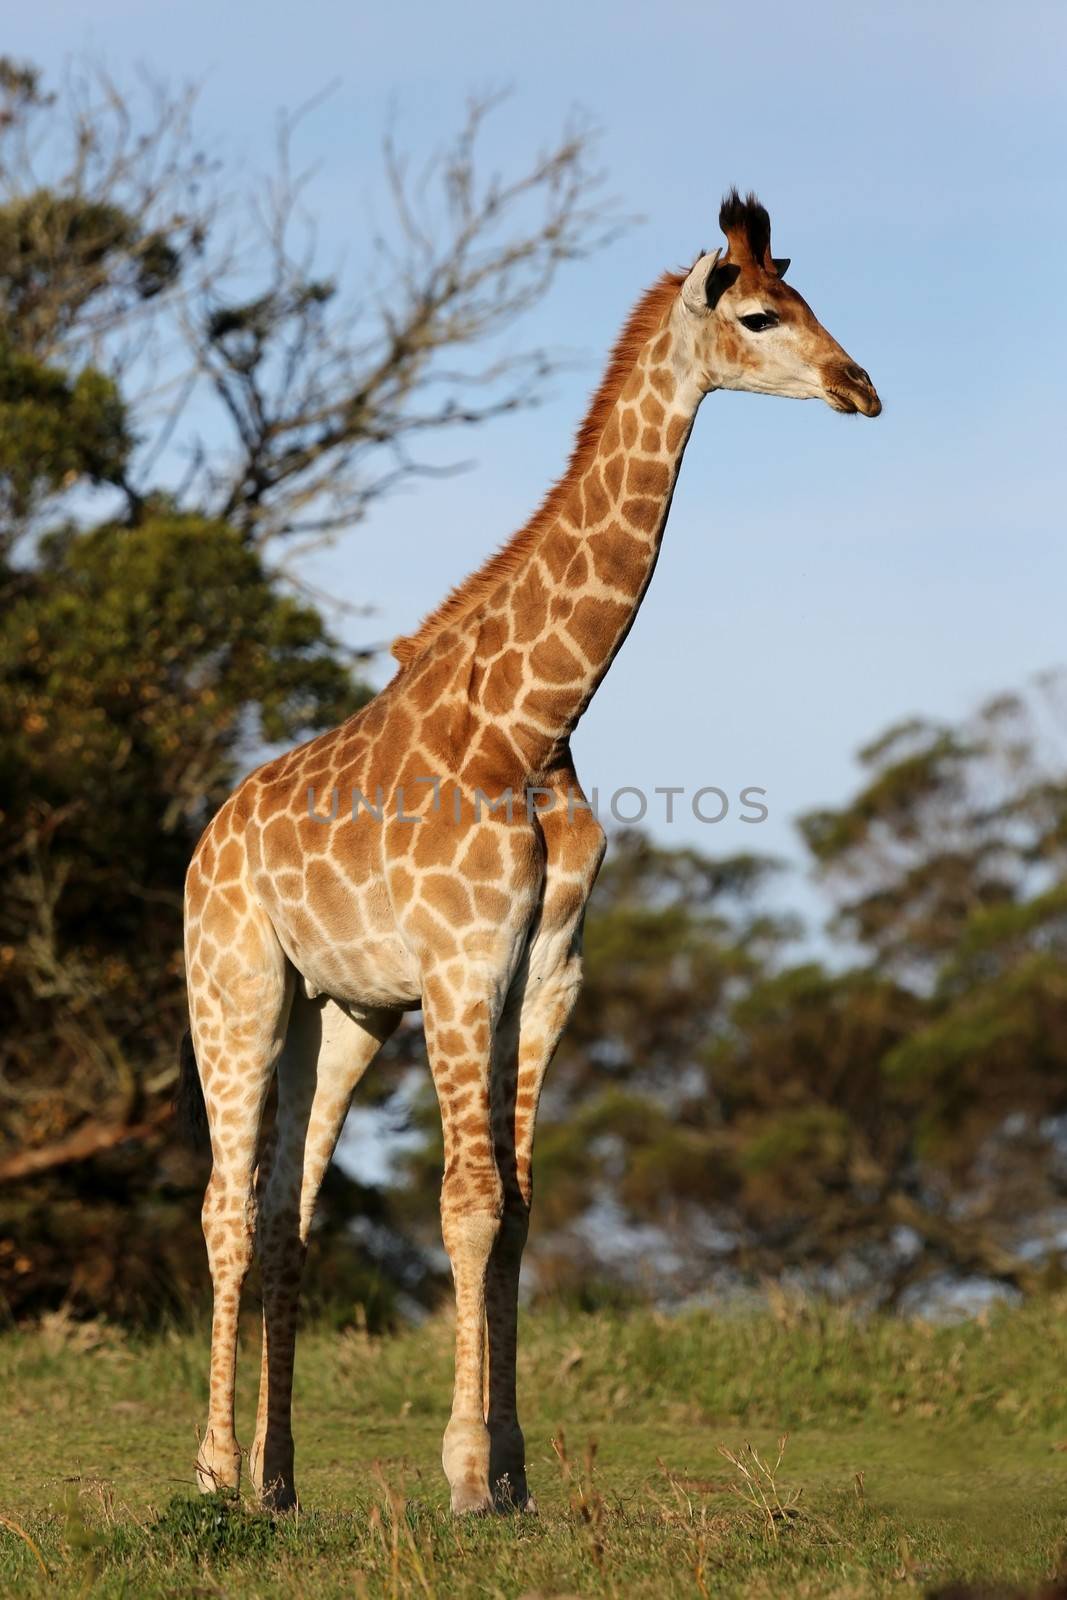 Giraffe in Africa by fouroaks